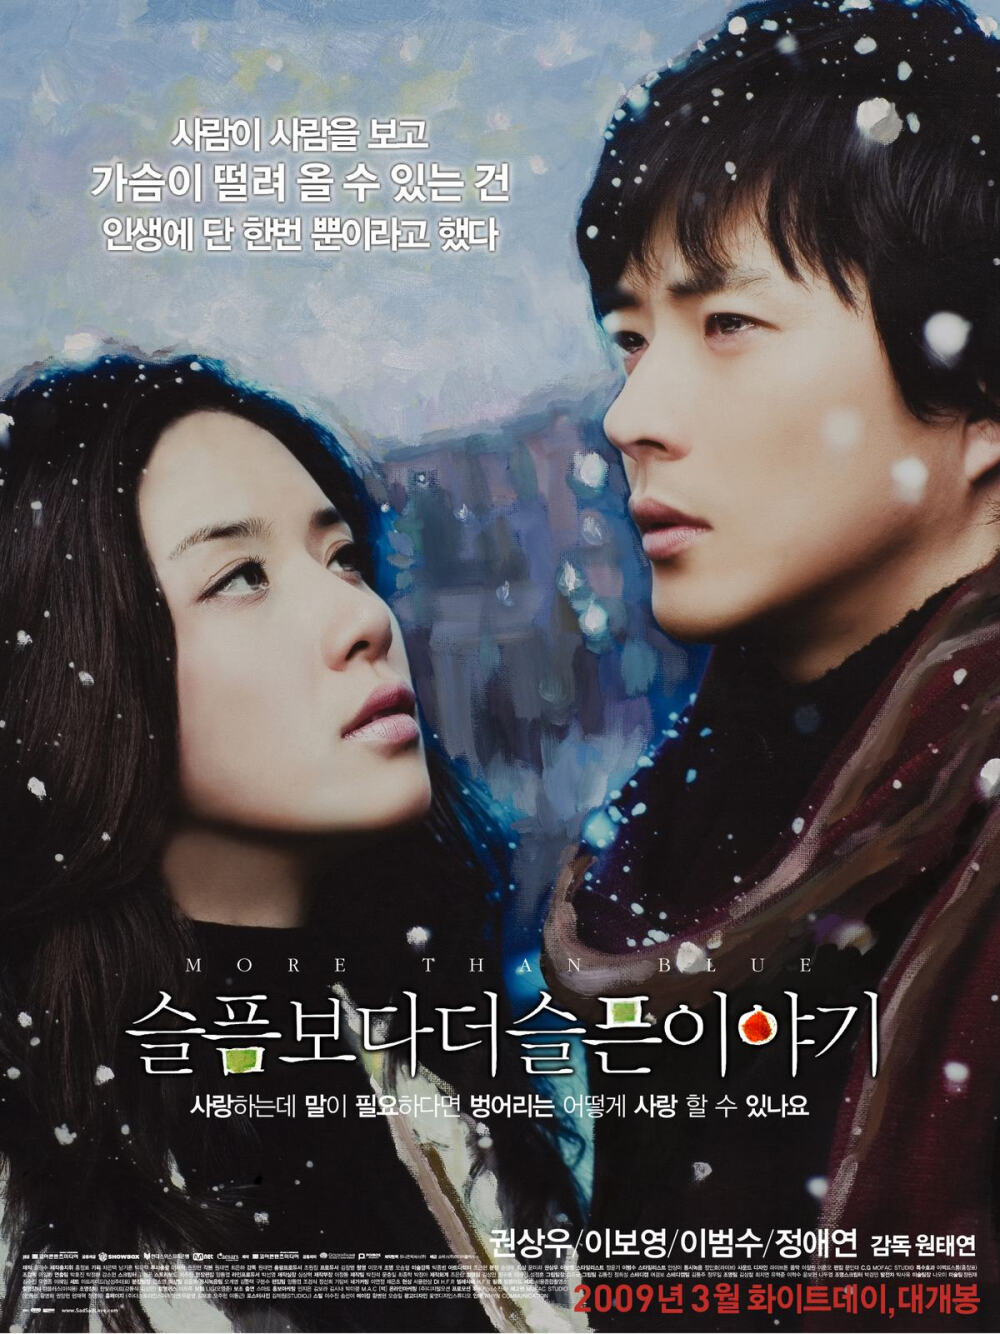 由权相宇,李宝英主演的面向年轻观众的文艺爱情电影,于2009年在韩国